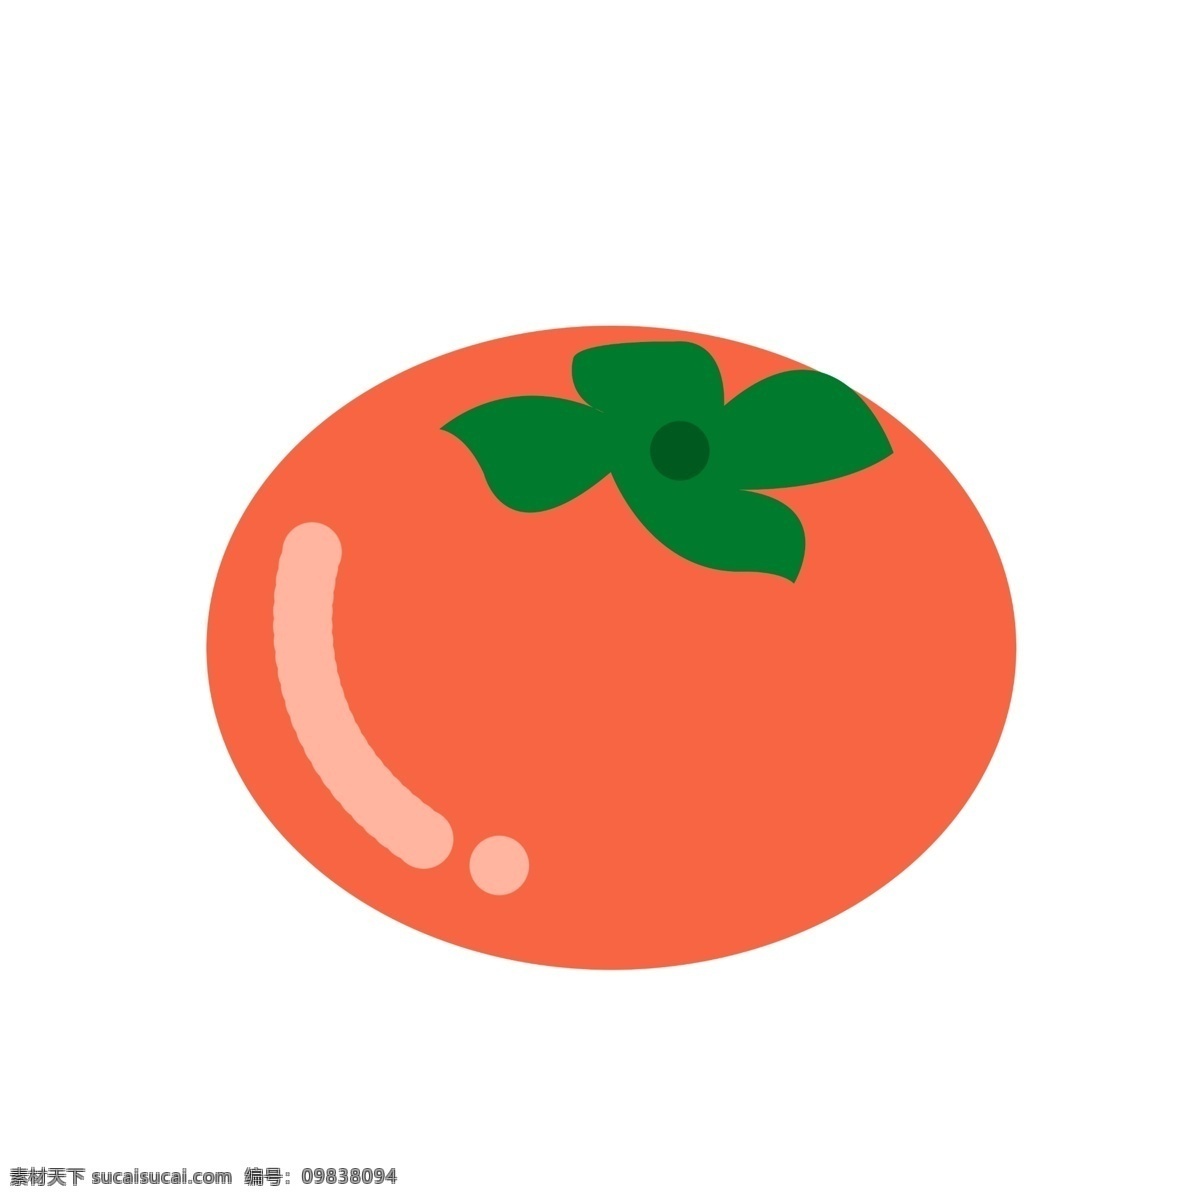 水果 图标 元素 柿子 水果图标 简约风格 ppt图标 柿子水果 png免扣 免扣 海报图标